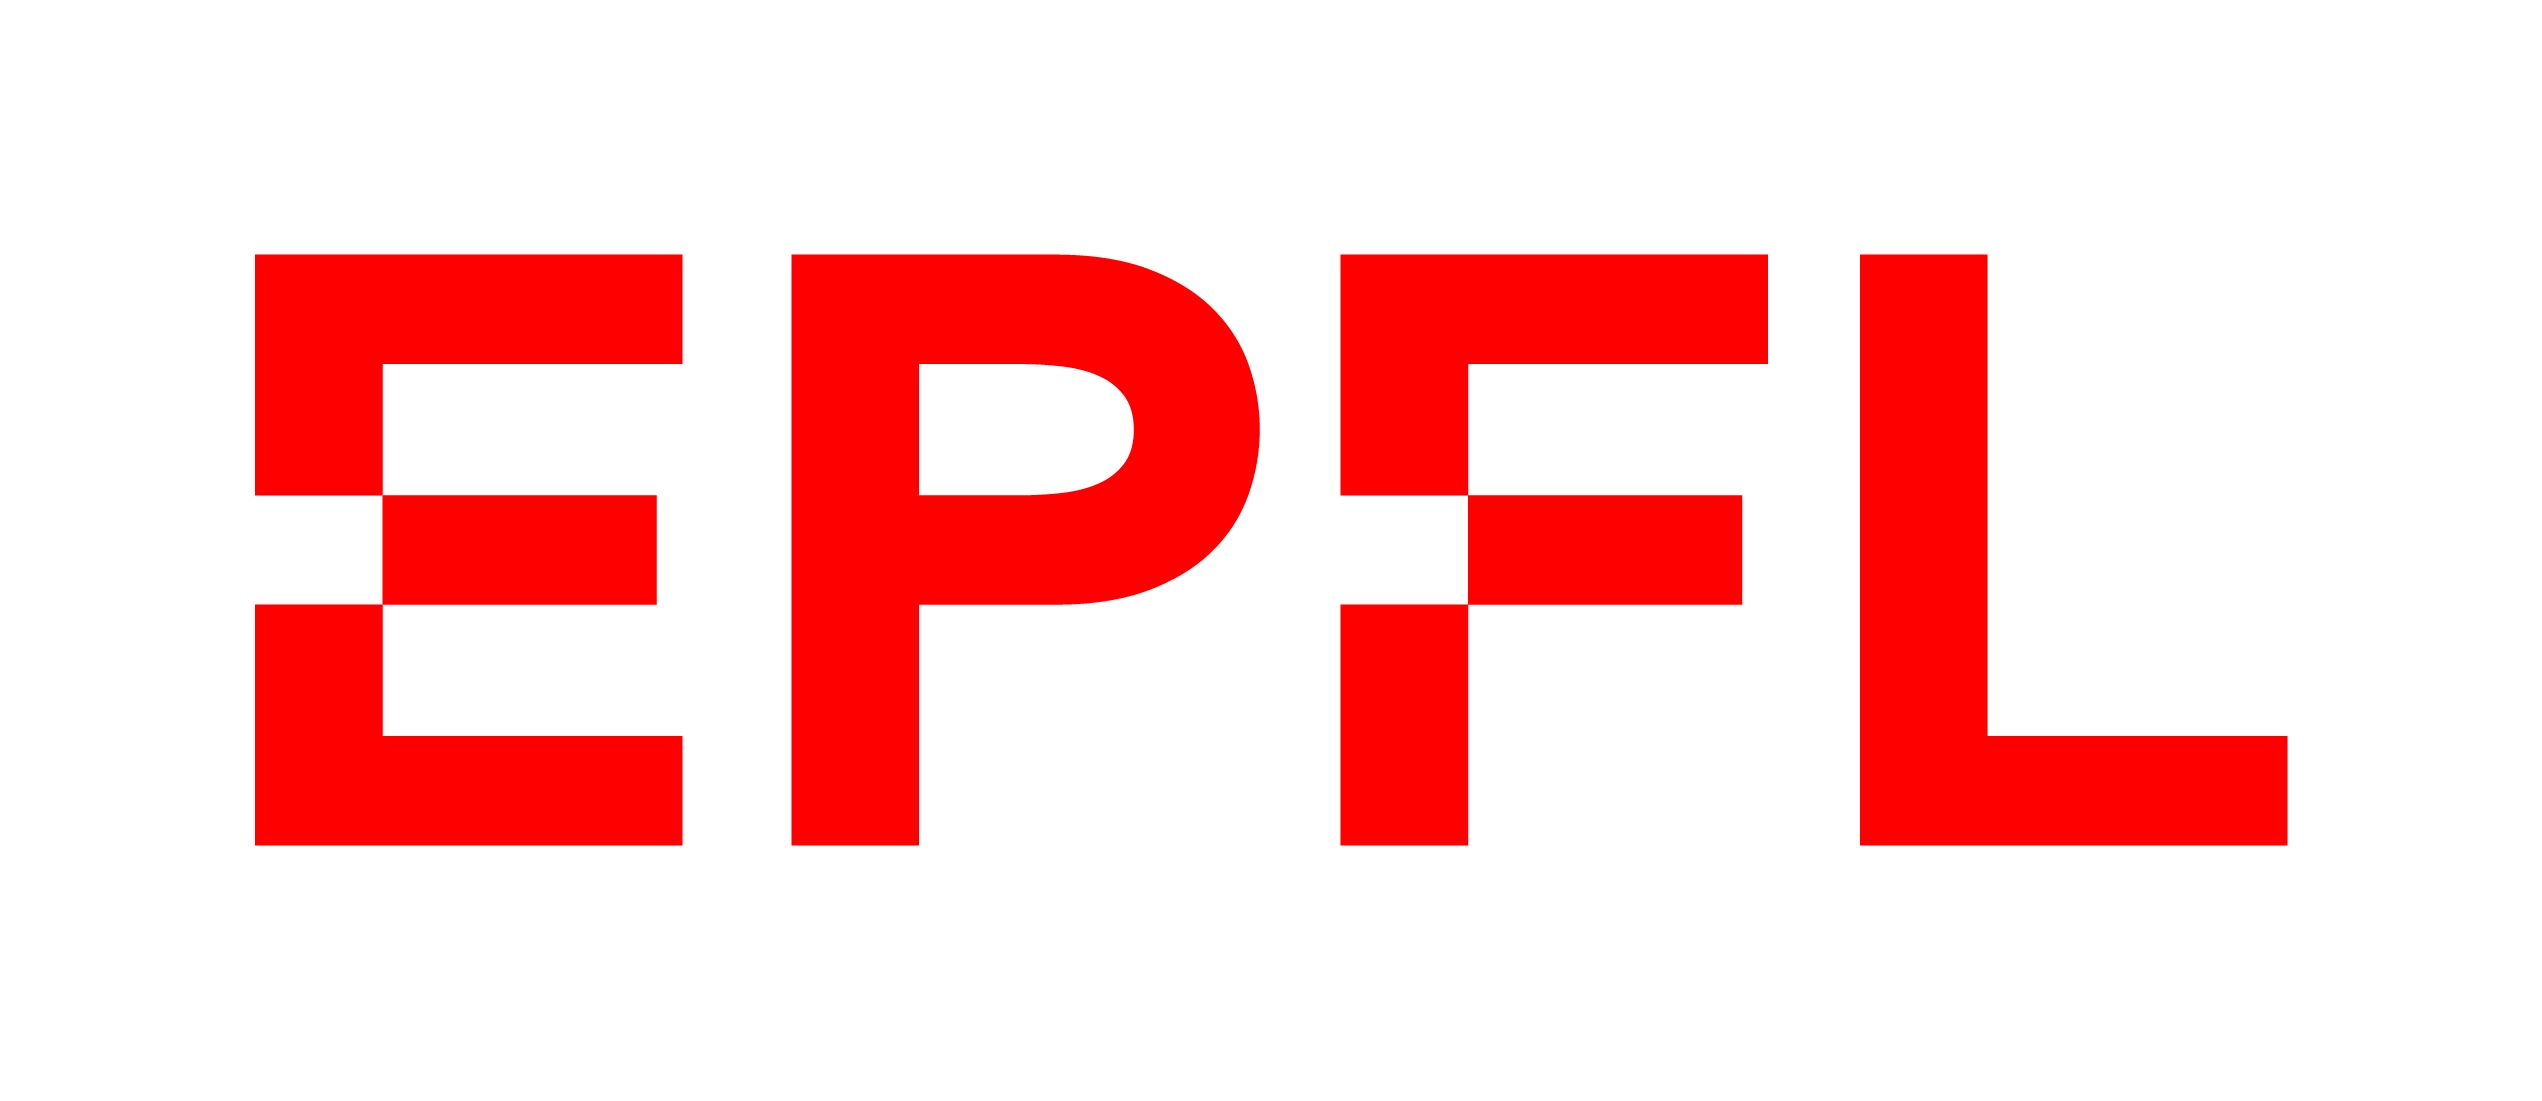 École polytechnique fédérale de Lausanne (EPFL) logo